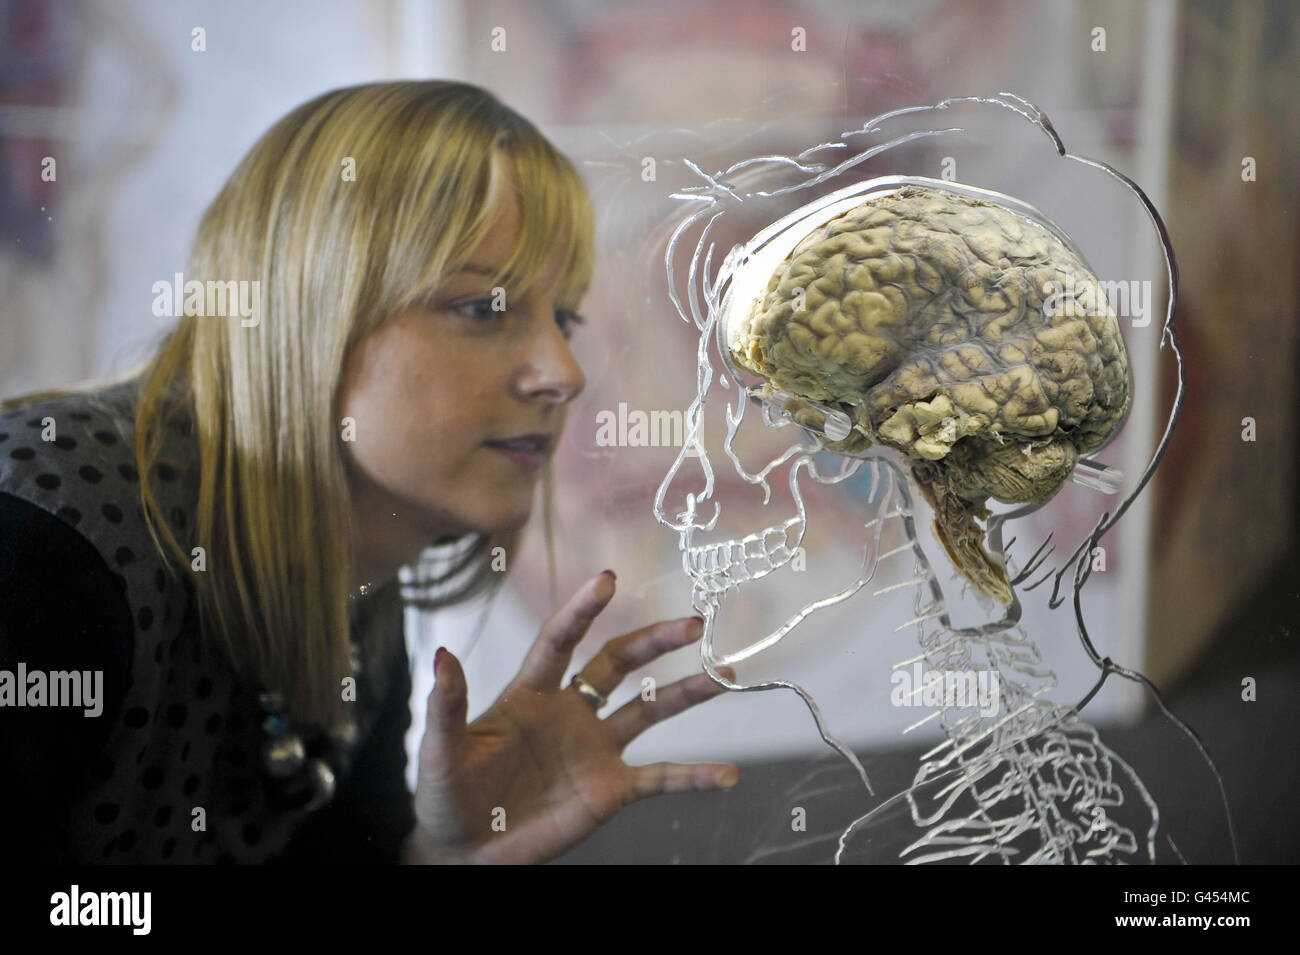 Kerrie Grist, de @Bristol science attraction, inspecte un vrai cerveau humain suspendu dans liquide avec un squelette à l'échelle, le système nerveux central et la silhouette humaine sculptée dans l'acrylique, alors que la nouvelle exposition intitulée "tout sur nous" se prépare à ouvrir au public le vendredi 11 mars. Banque D'Images